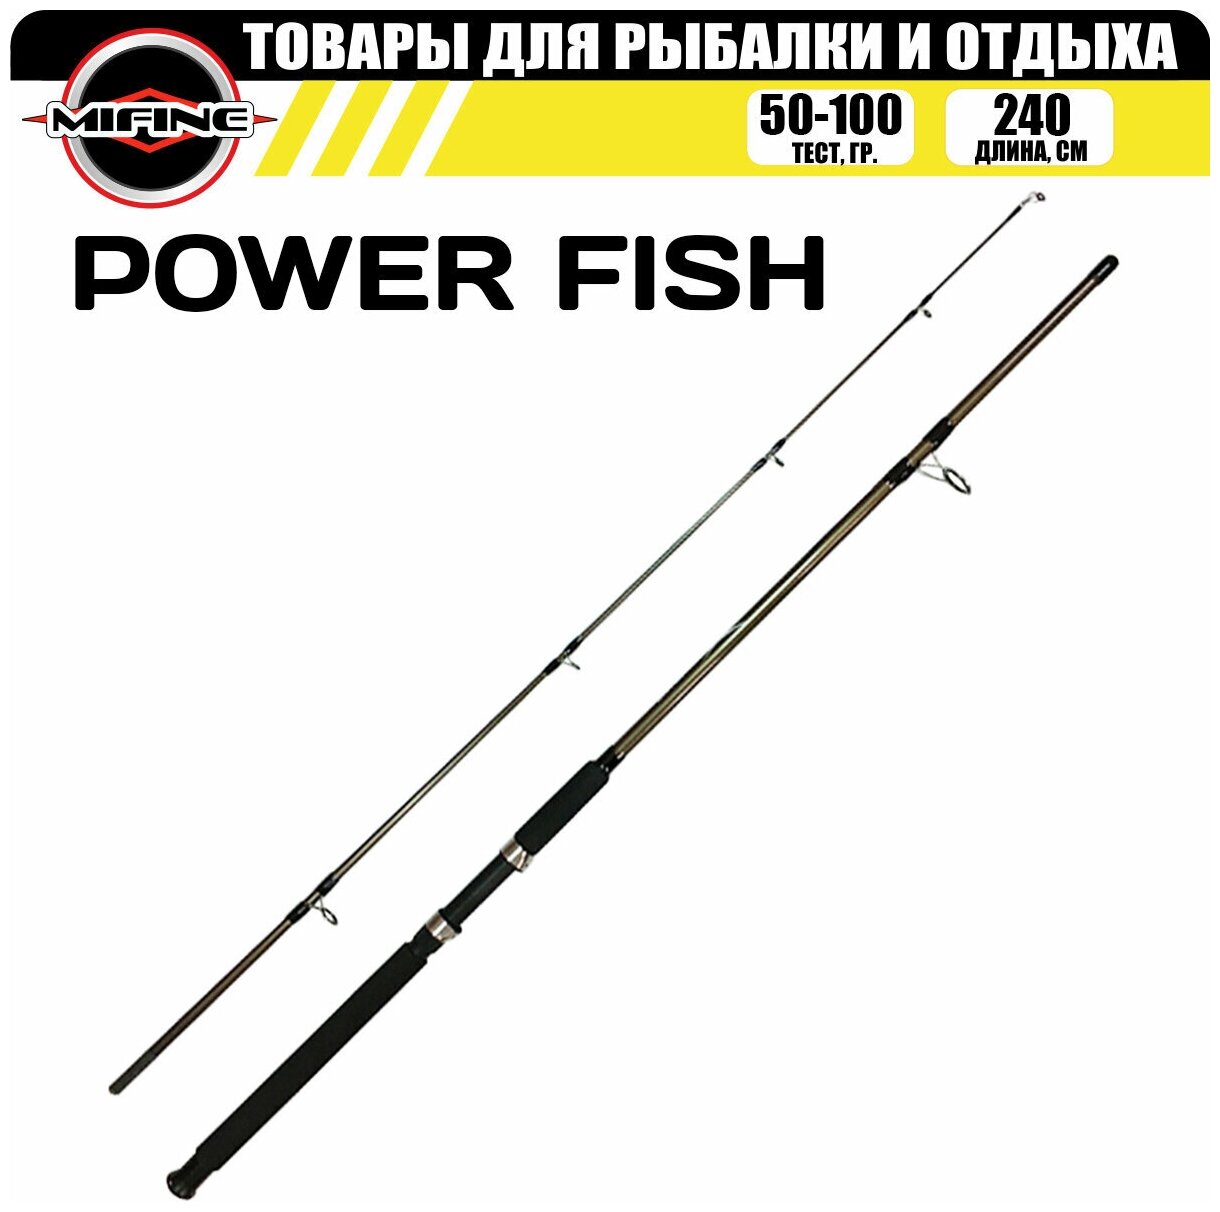 Спиннинг MIFINE POWER FISH SPIN 2.4м (50-100гр), для рыбалки, рыболовный, штекерный